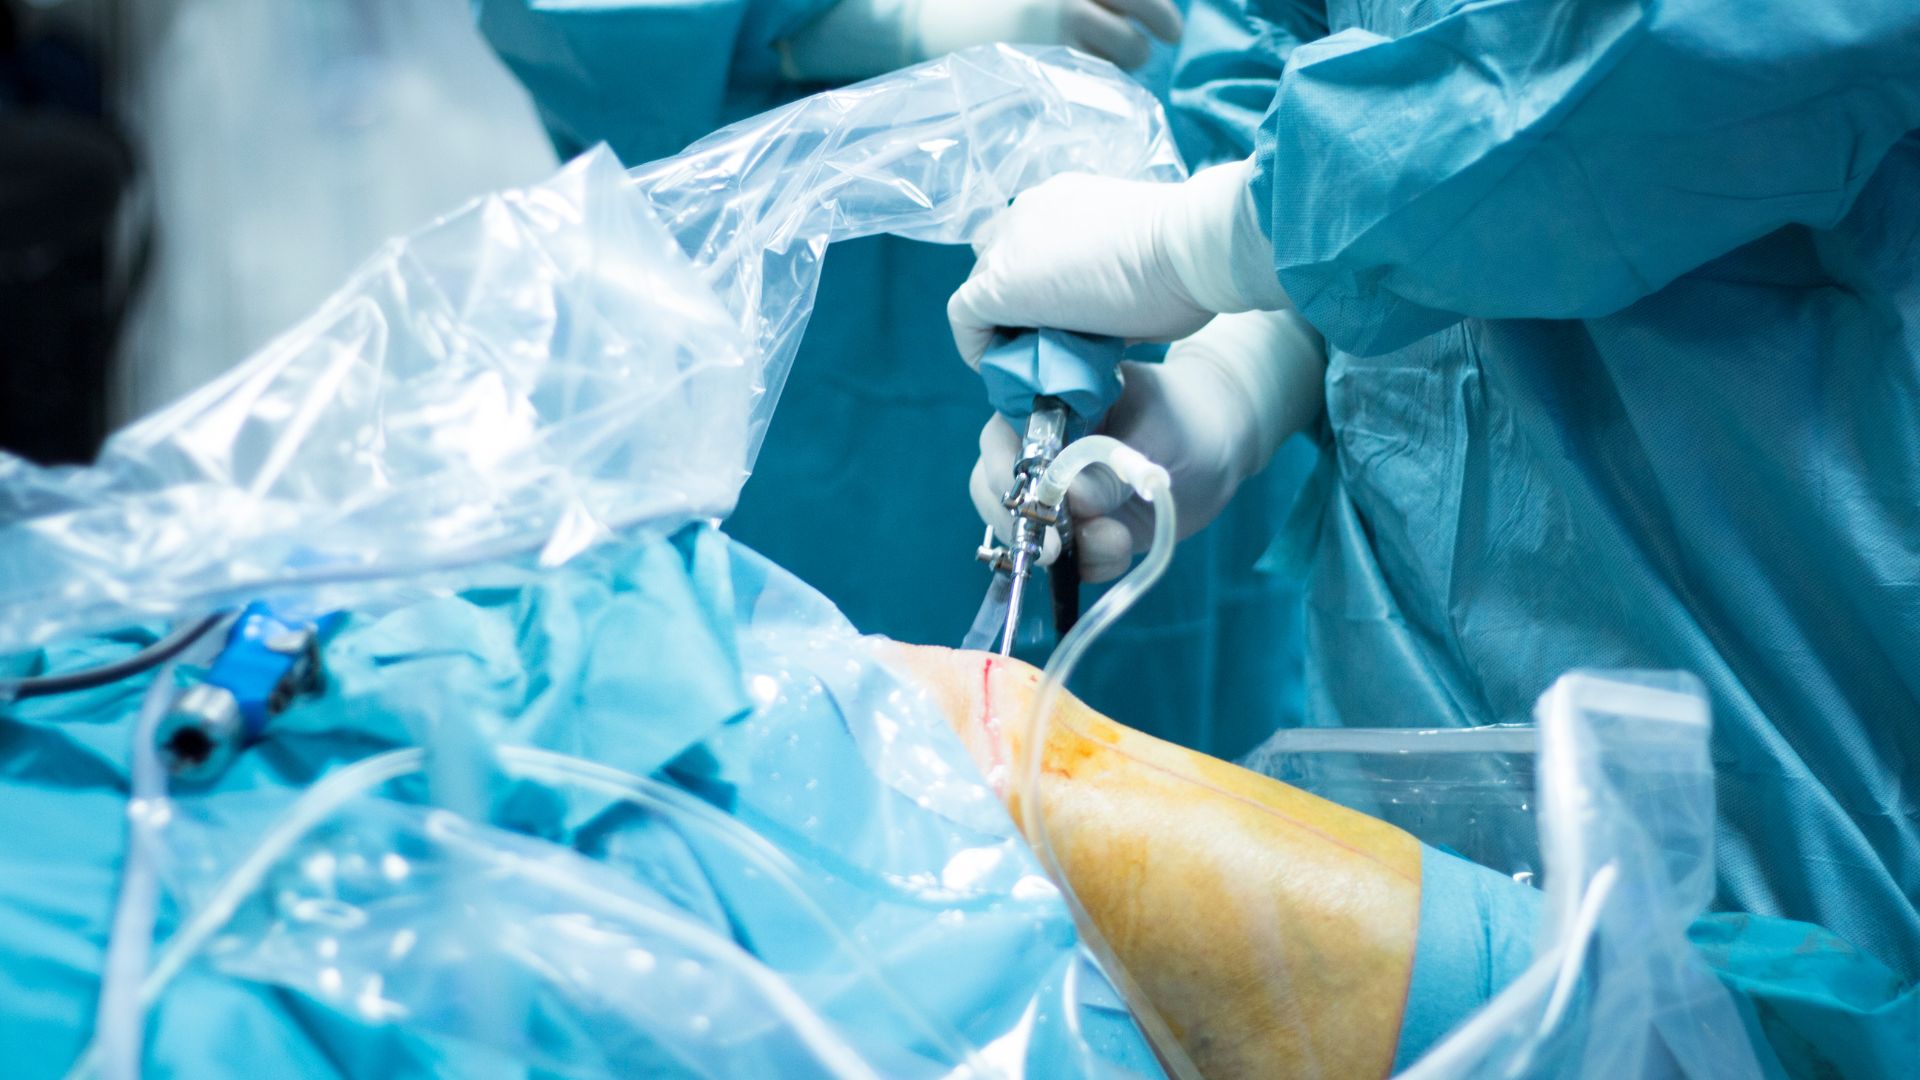 Operacja kolana przeprowadzana u pacjenta na stole operacyjnym. Chirurg korzysta z urządzenia do artroskopii.